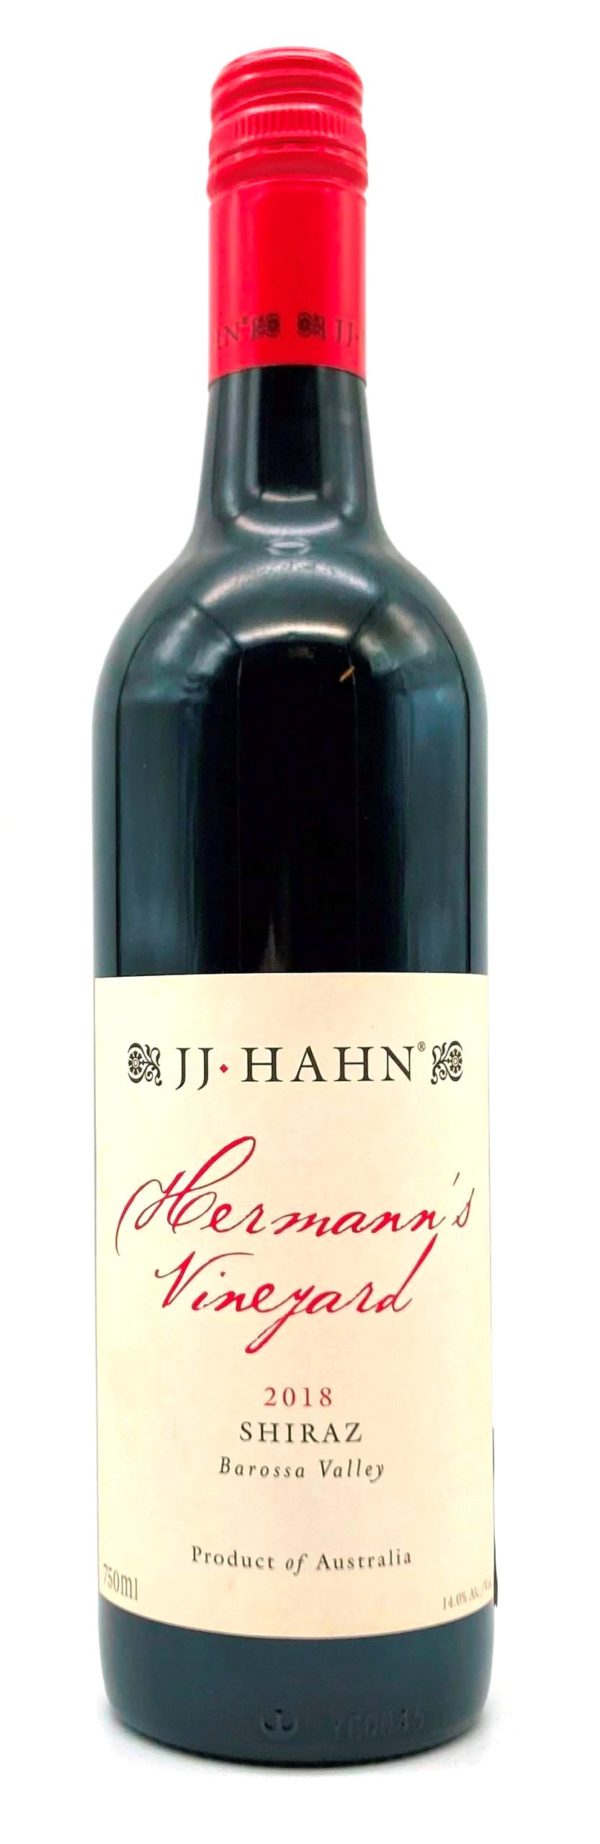 JJ Hahn 'Herman's Vineyard' Shiraz Edinburgh, Scotland